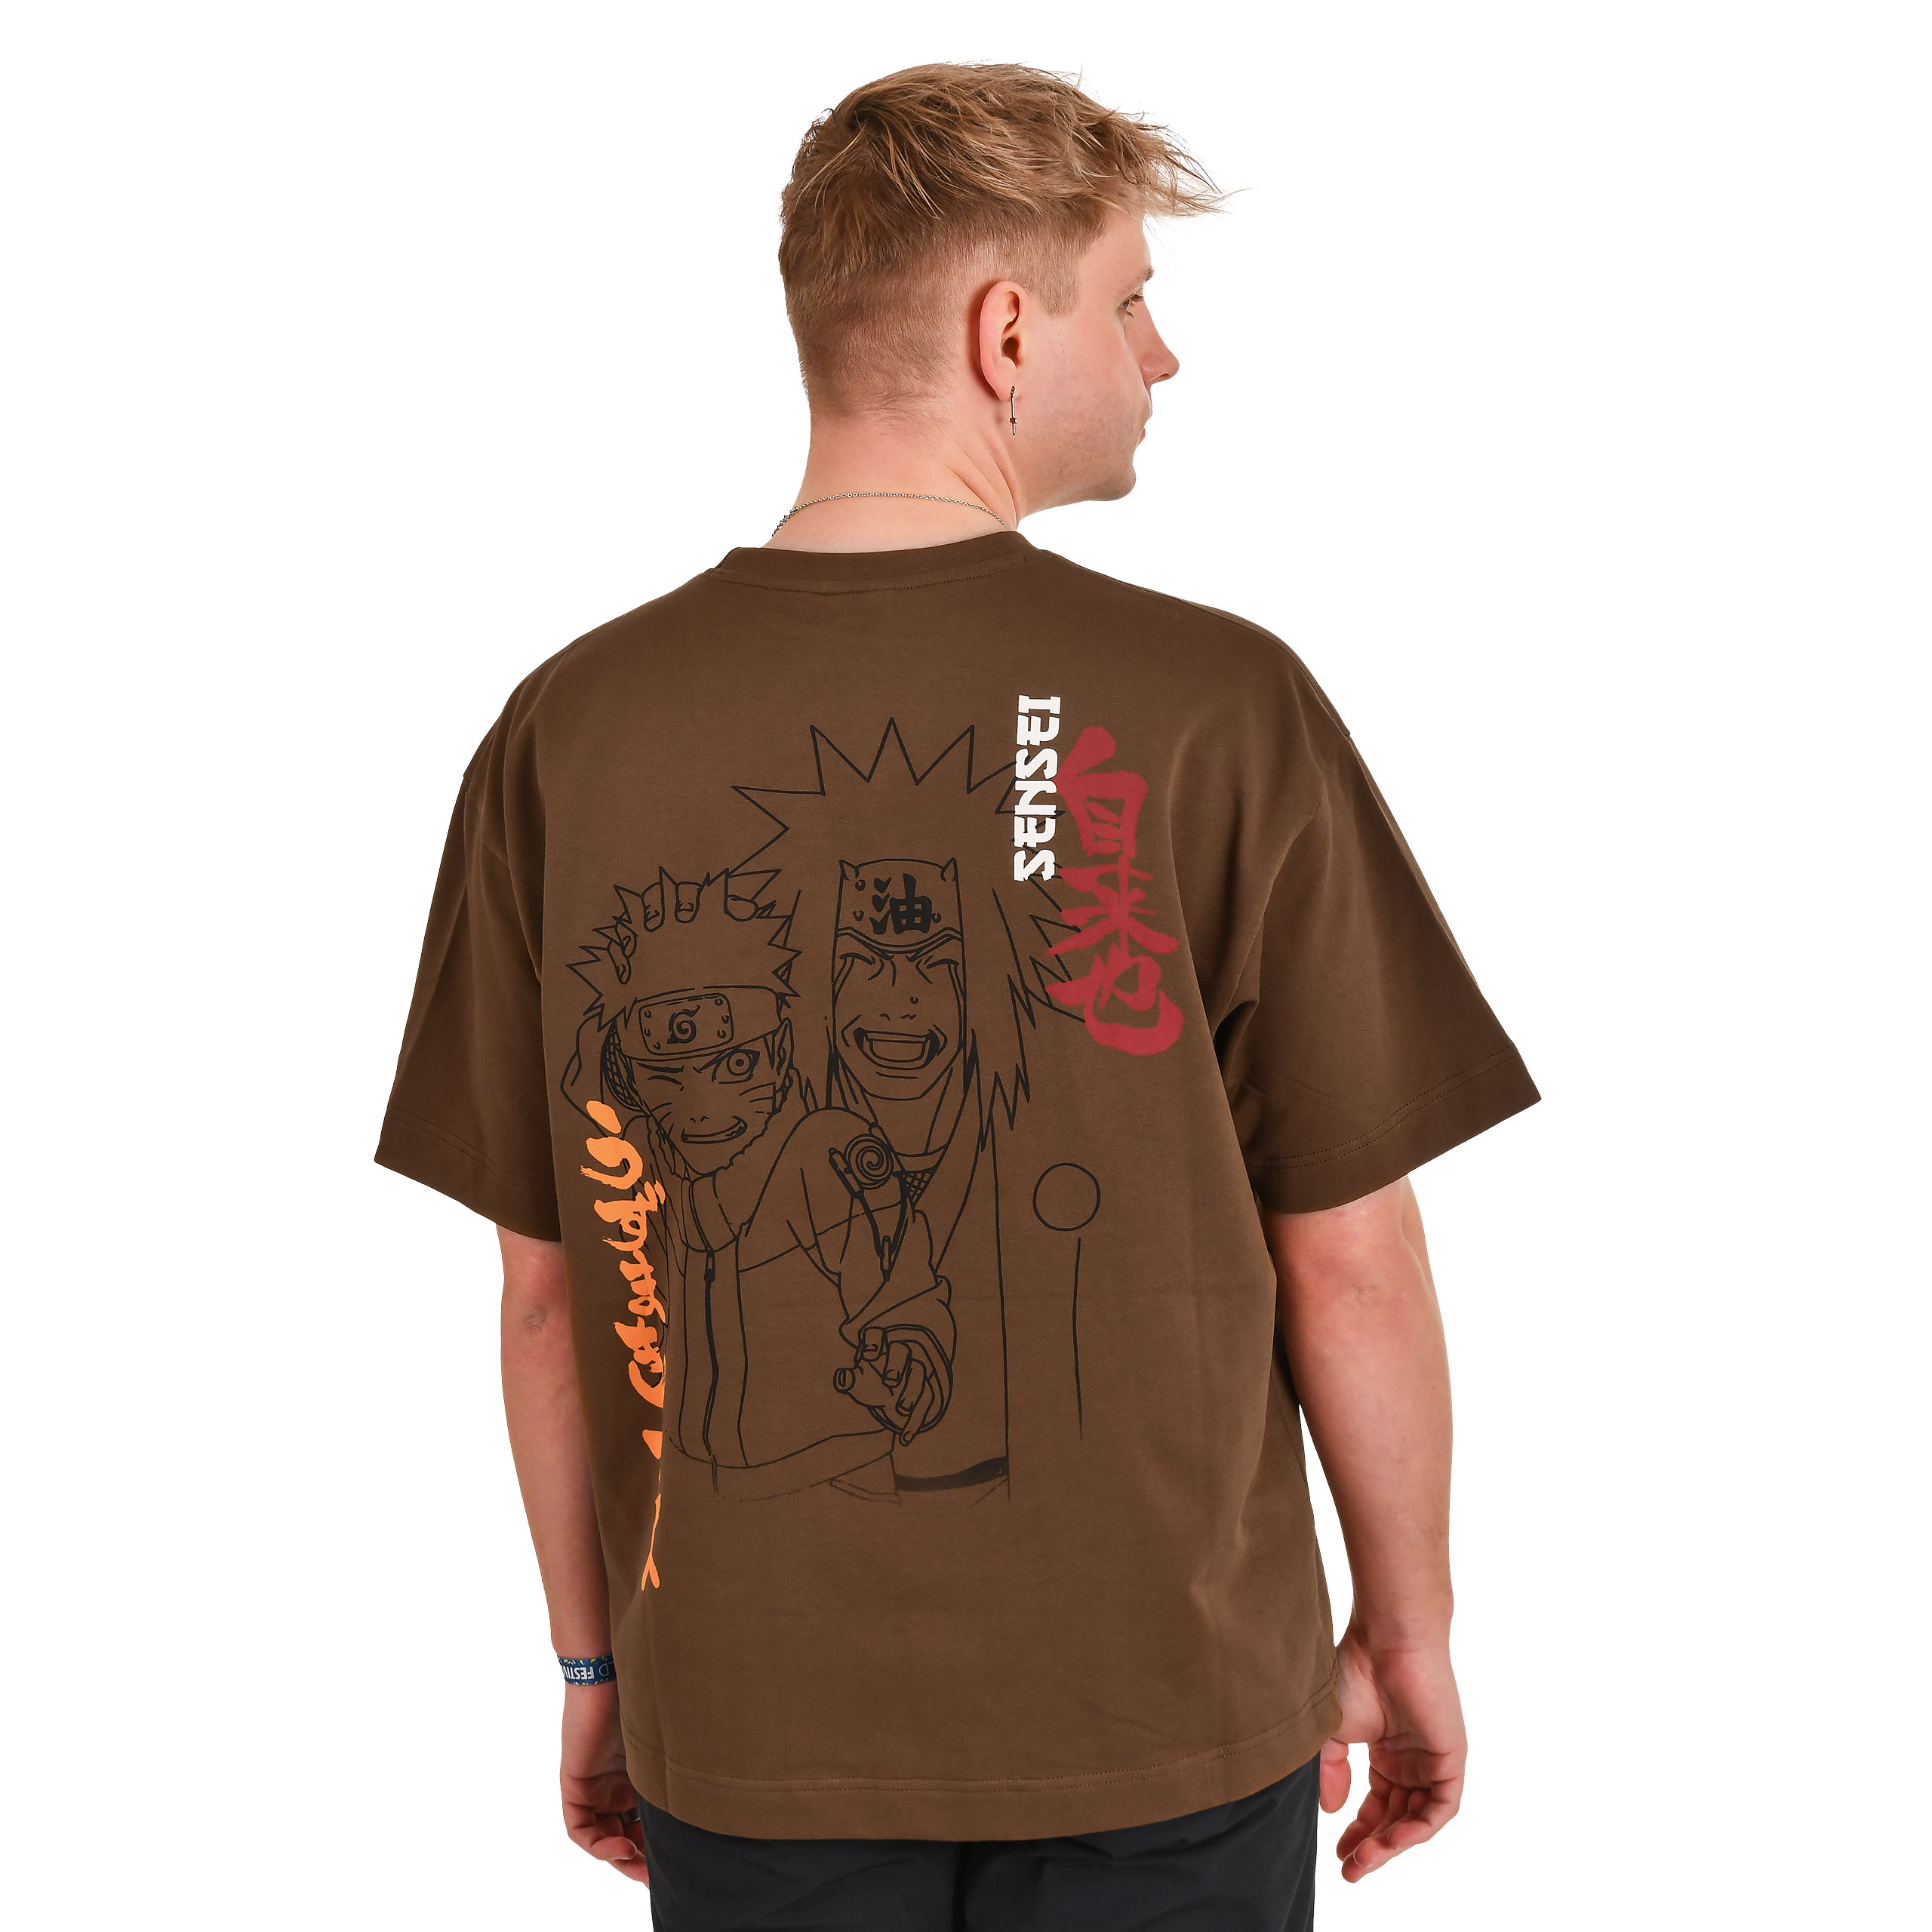 Naruto - Jiraiya & Naruto T-shirt Premium Oversize